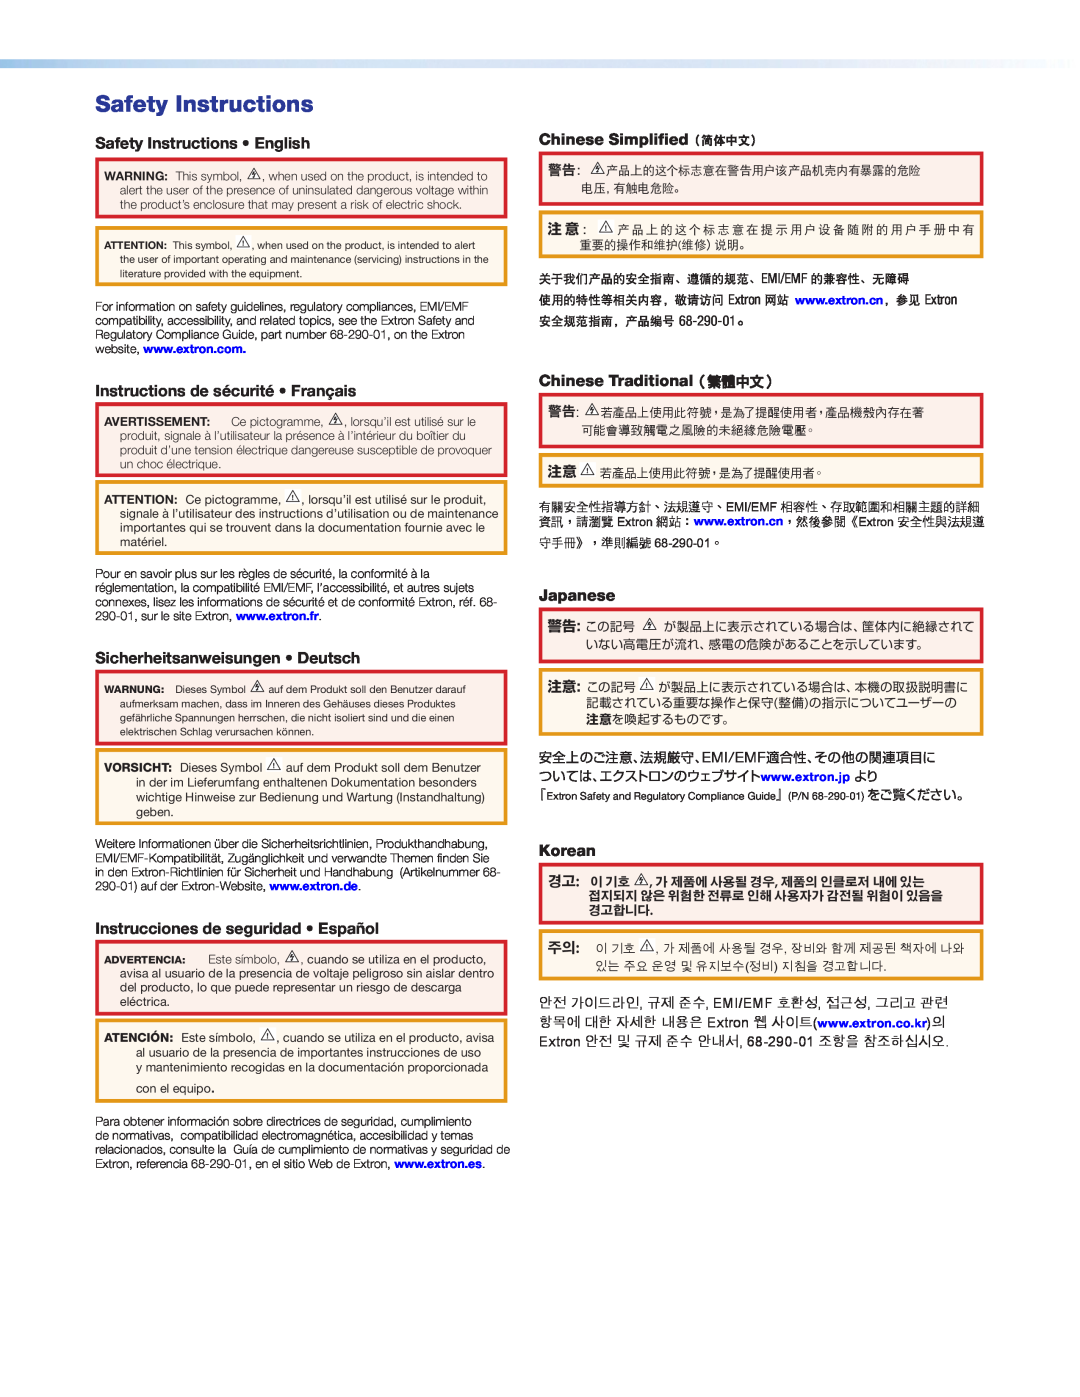 Extron electronic SM 26 manual Safety Instructions English, Chinese Simplified（简体中文）, Instructions de sécurité Français 